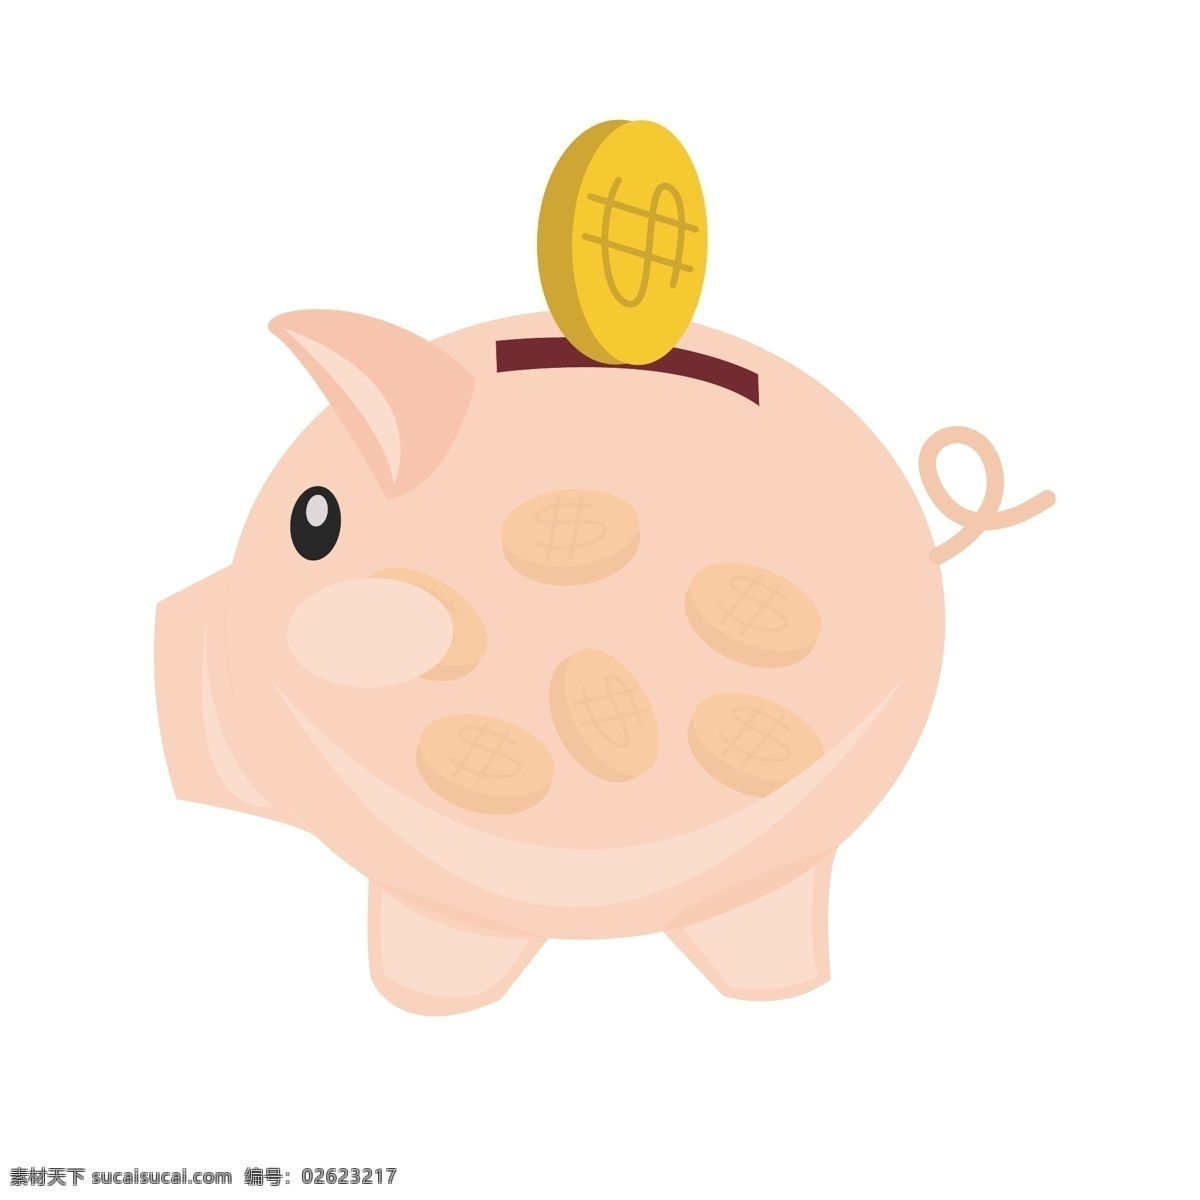 手绘 金融 小 猪 插画 金融存钱罐 金色的钱币 卡通插画 手绘金融插画 金融小物插画 胖胖的小猪